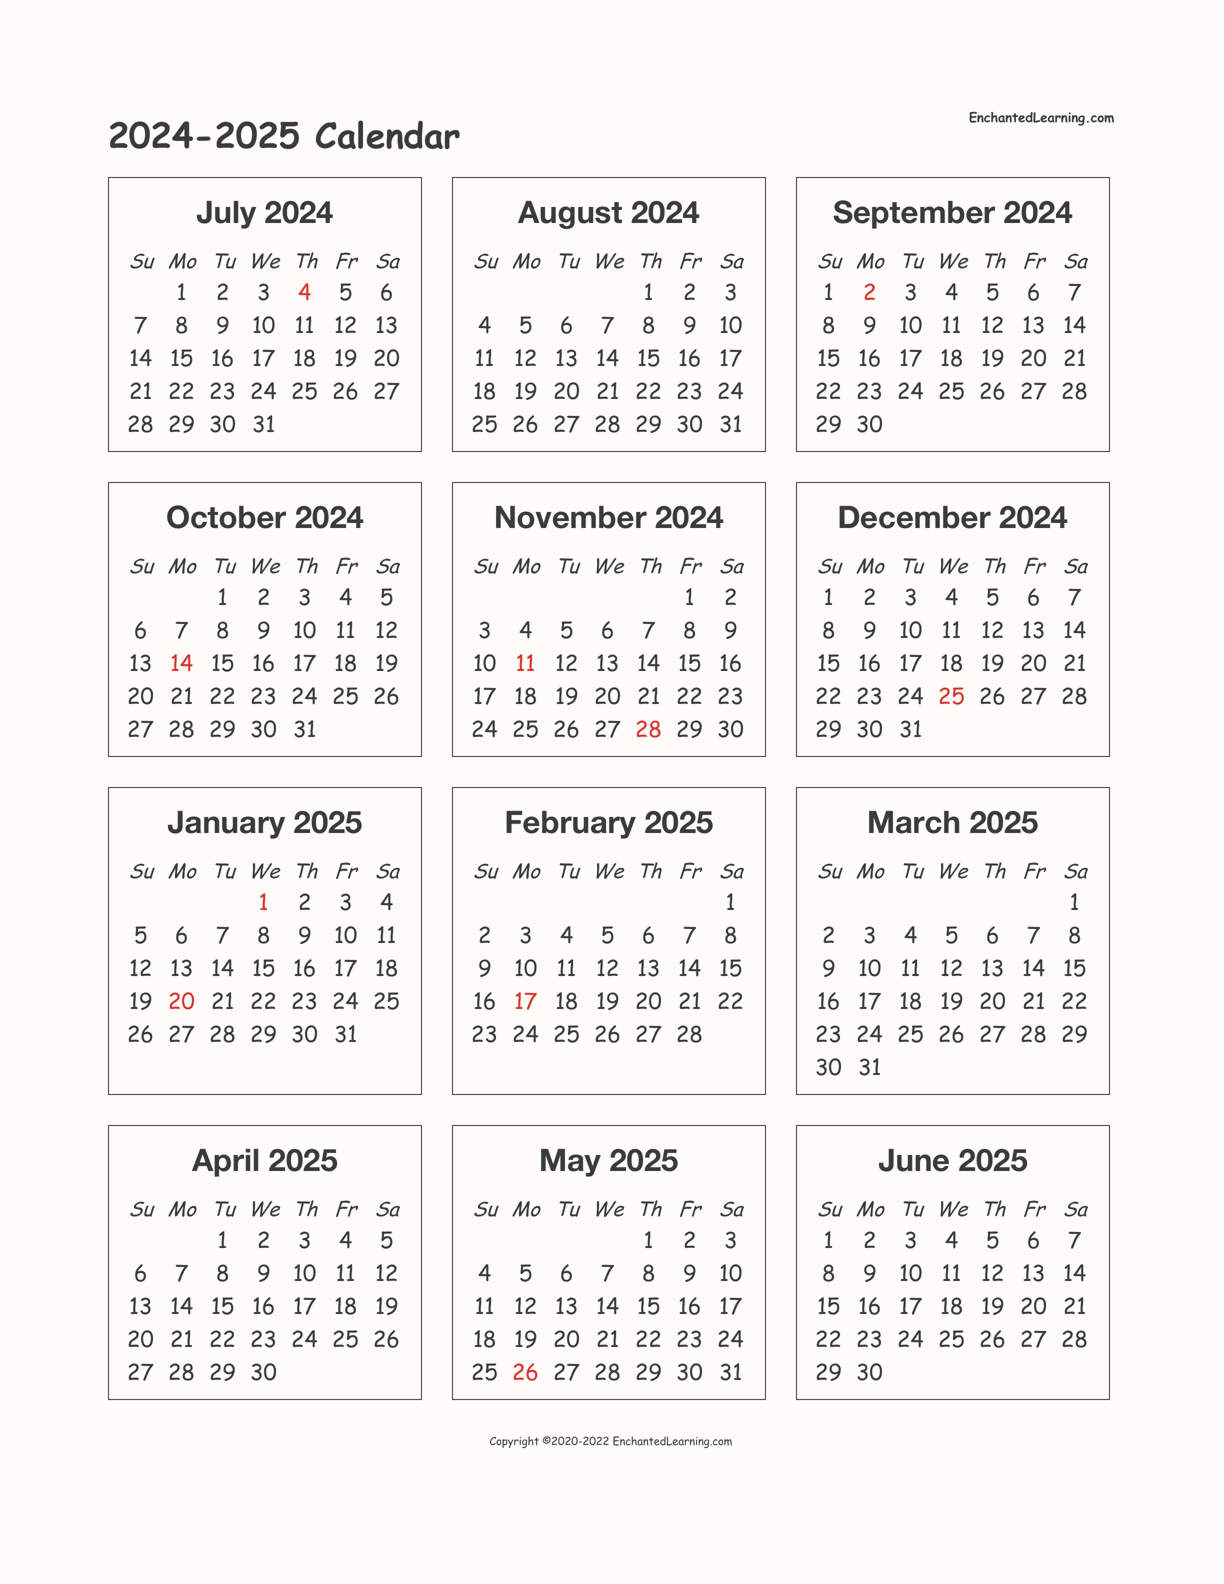 tdsb-calendar-2024-2025-hattie-christalle